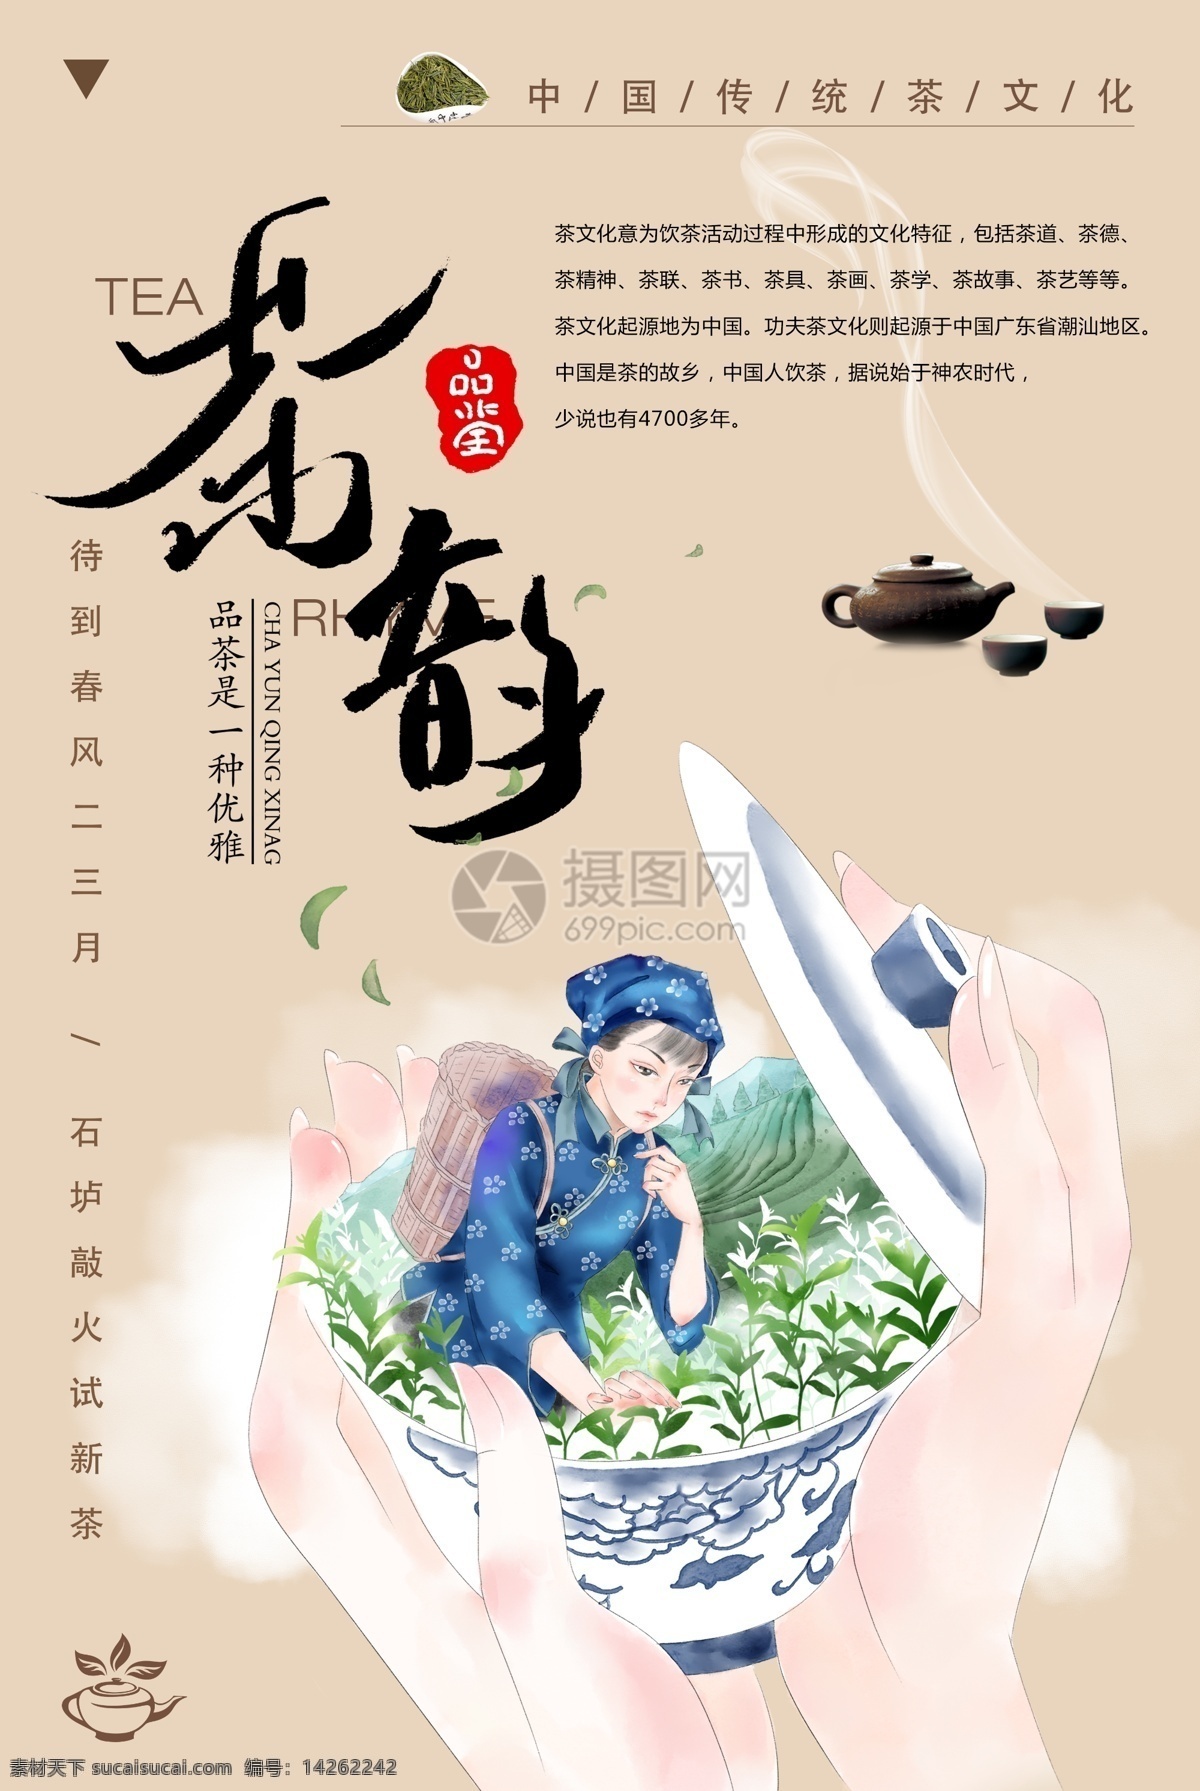 中国 风 茶 韵 海报 中国风 茶文化 茶韵 模板设计 传统 传承文化 茶叶 采茶